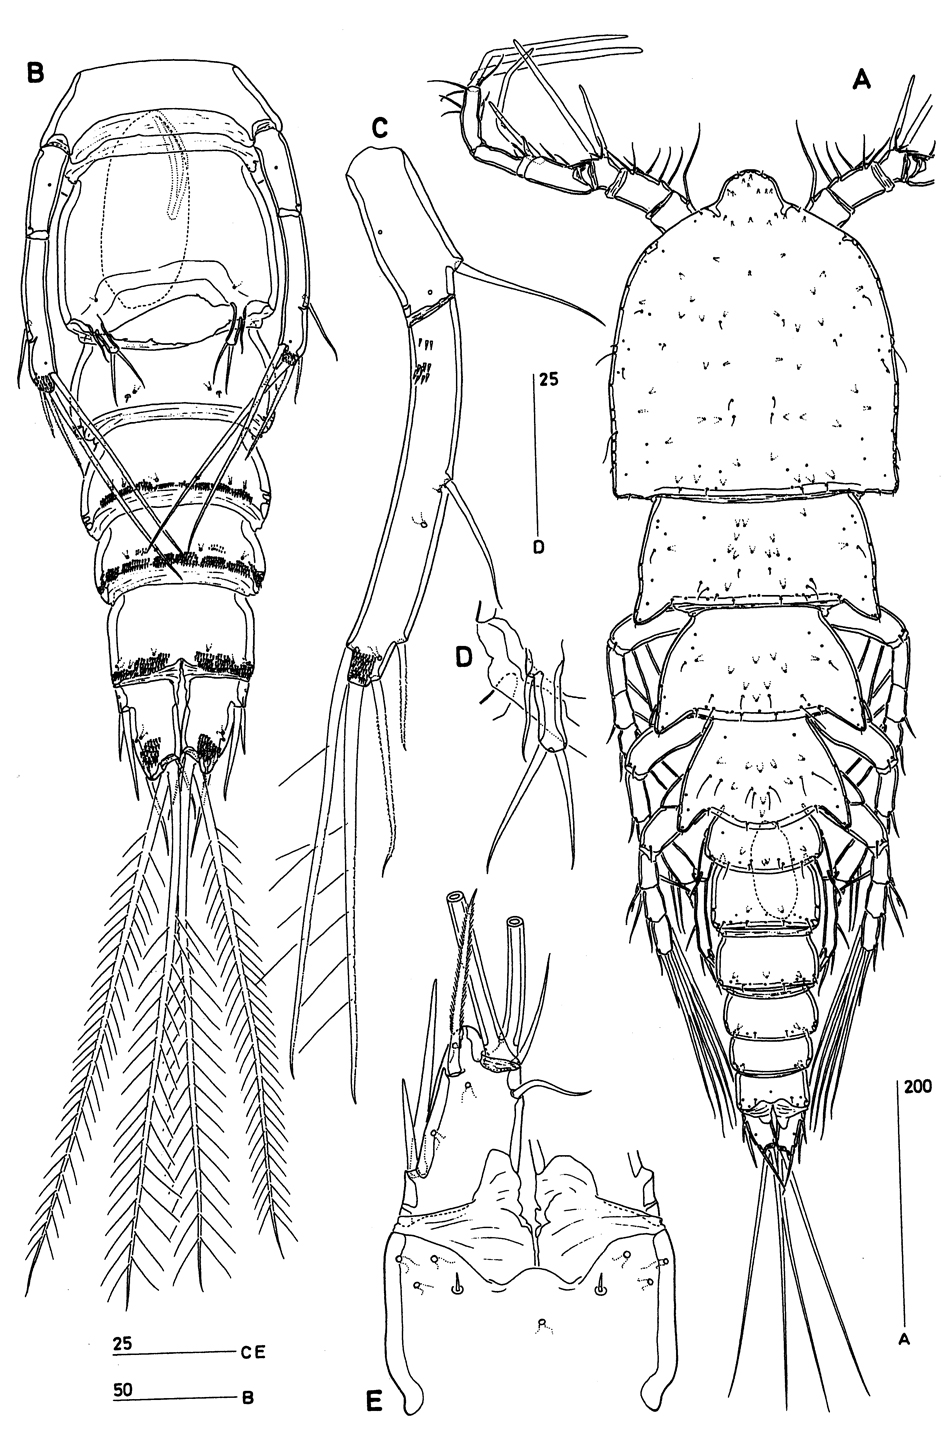 Espèce Clytemnestra asetosa - Planche 5 de figures morphologiques